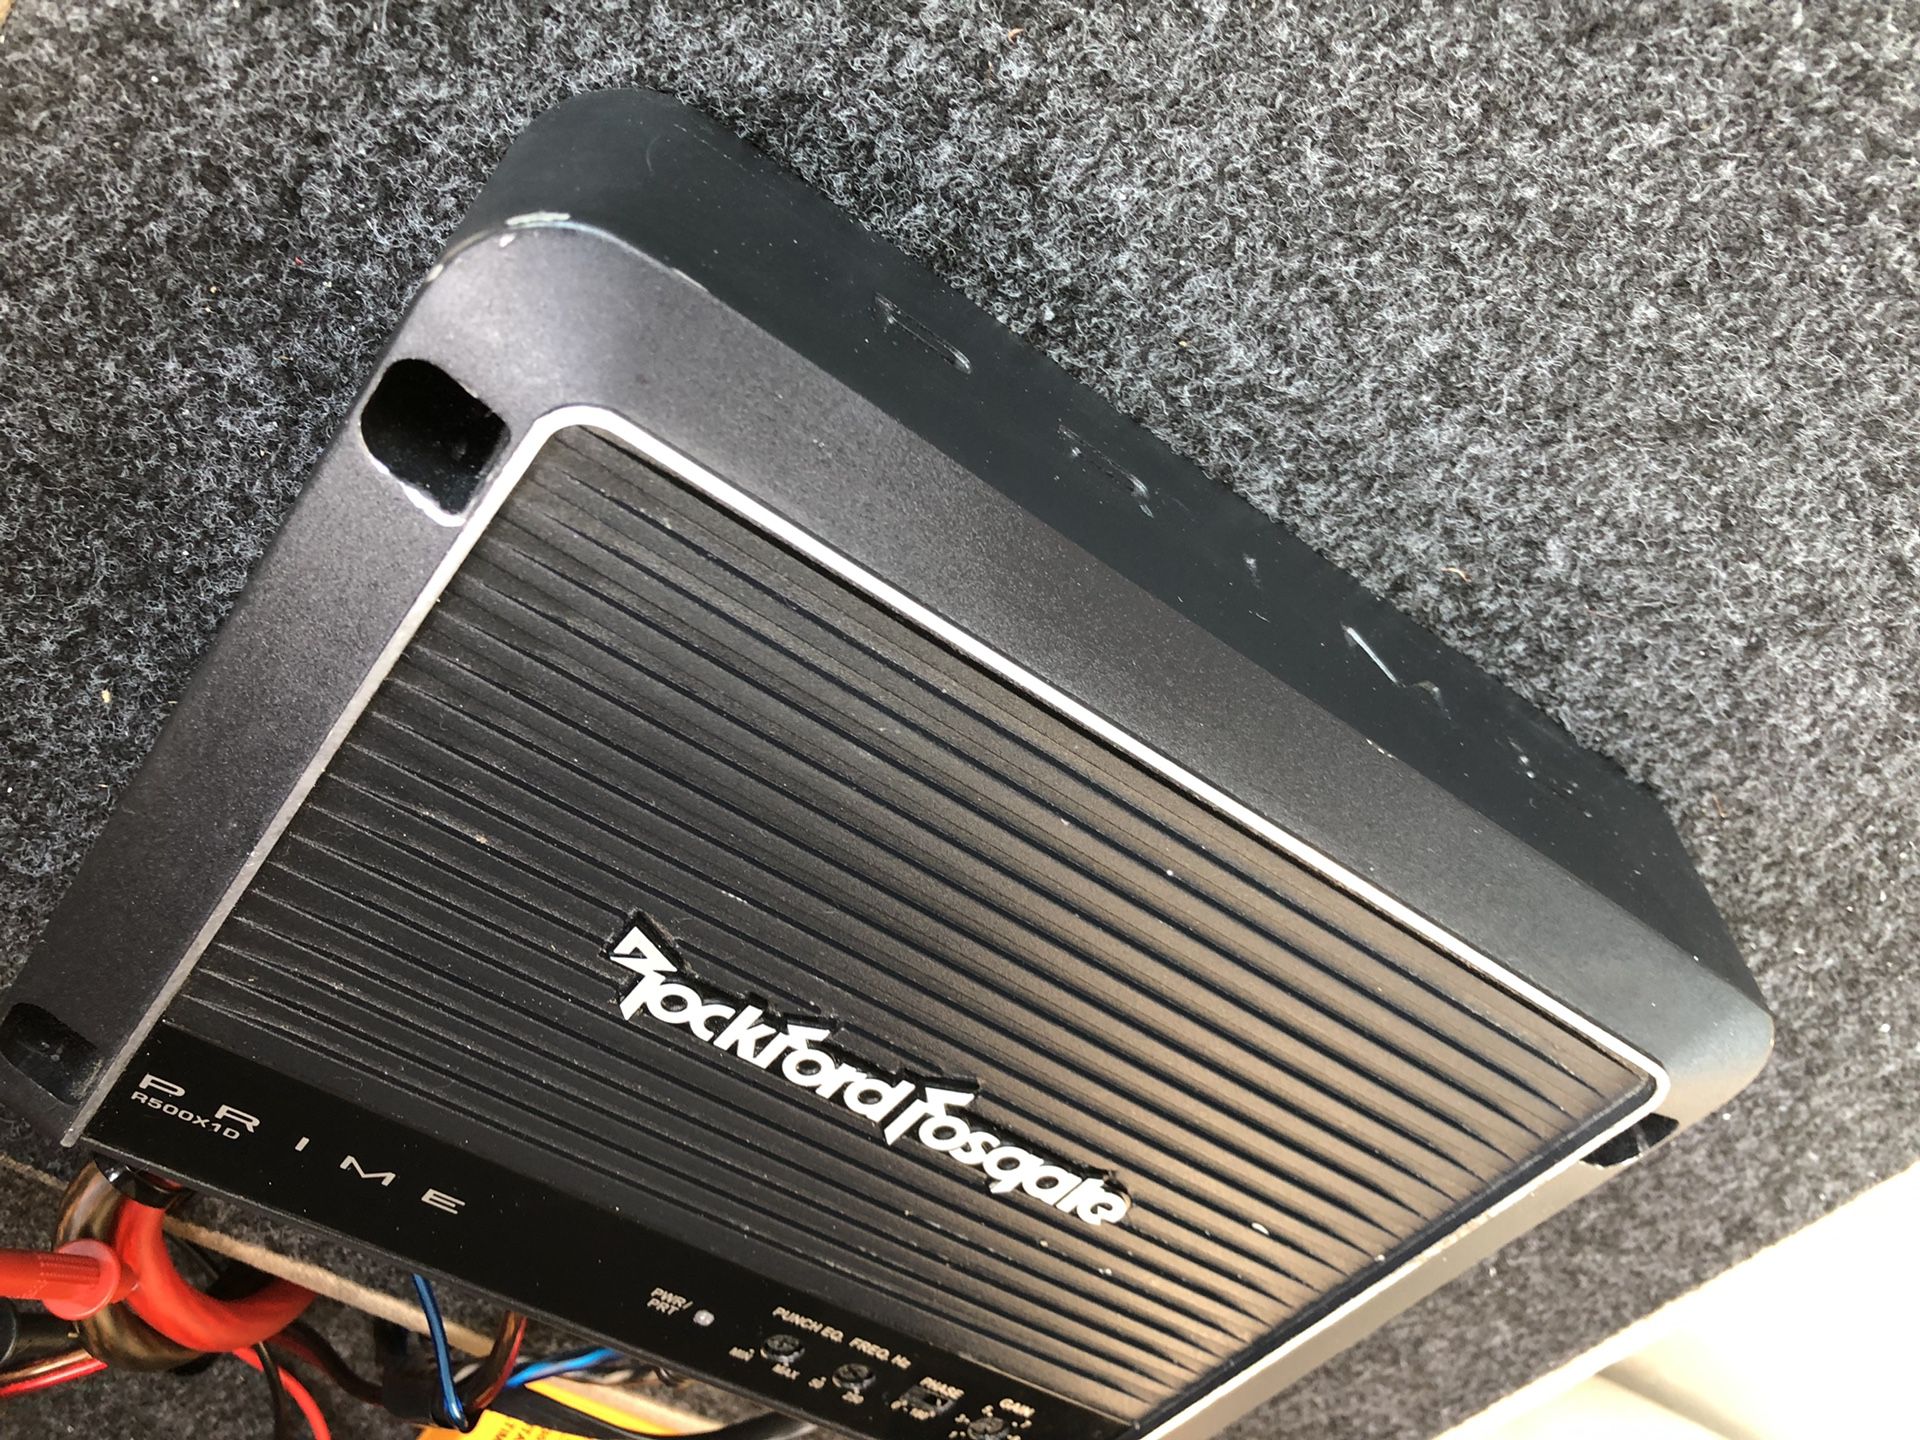 500.1 Rockford fosgate amplifier